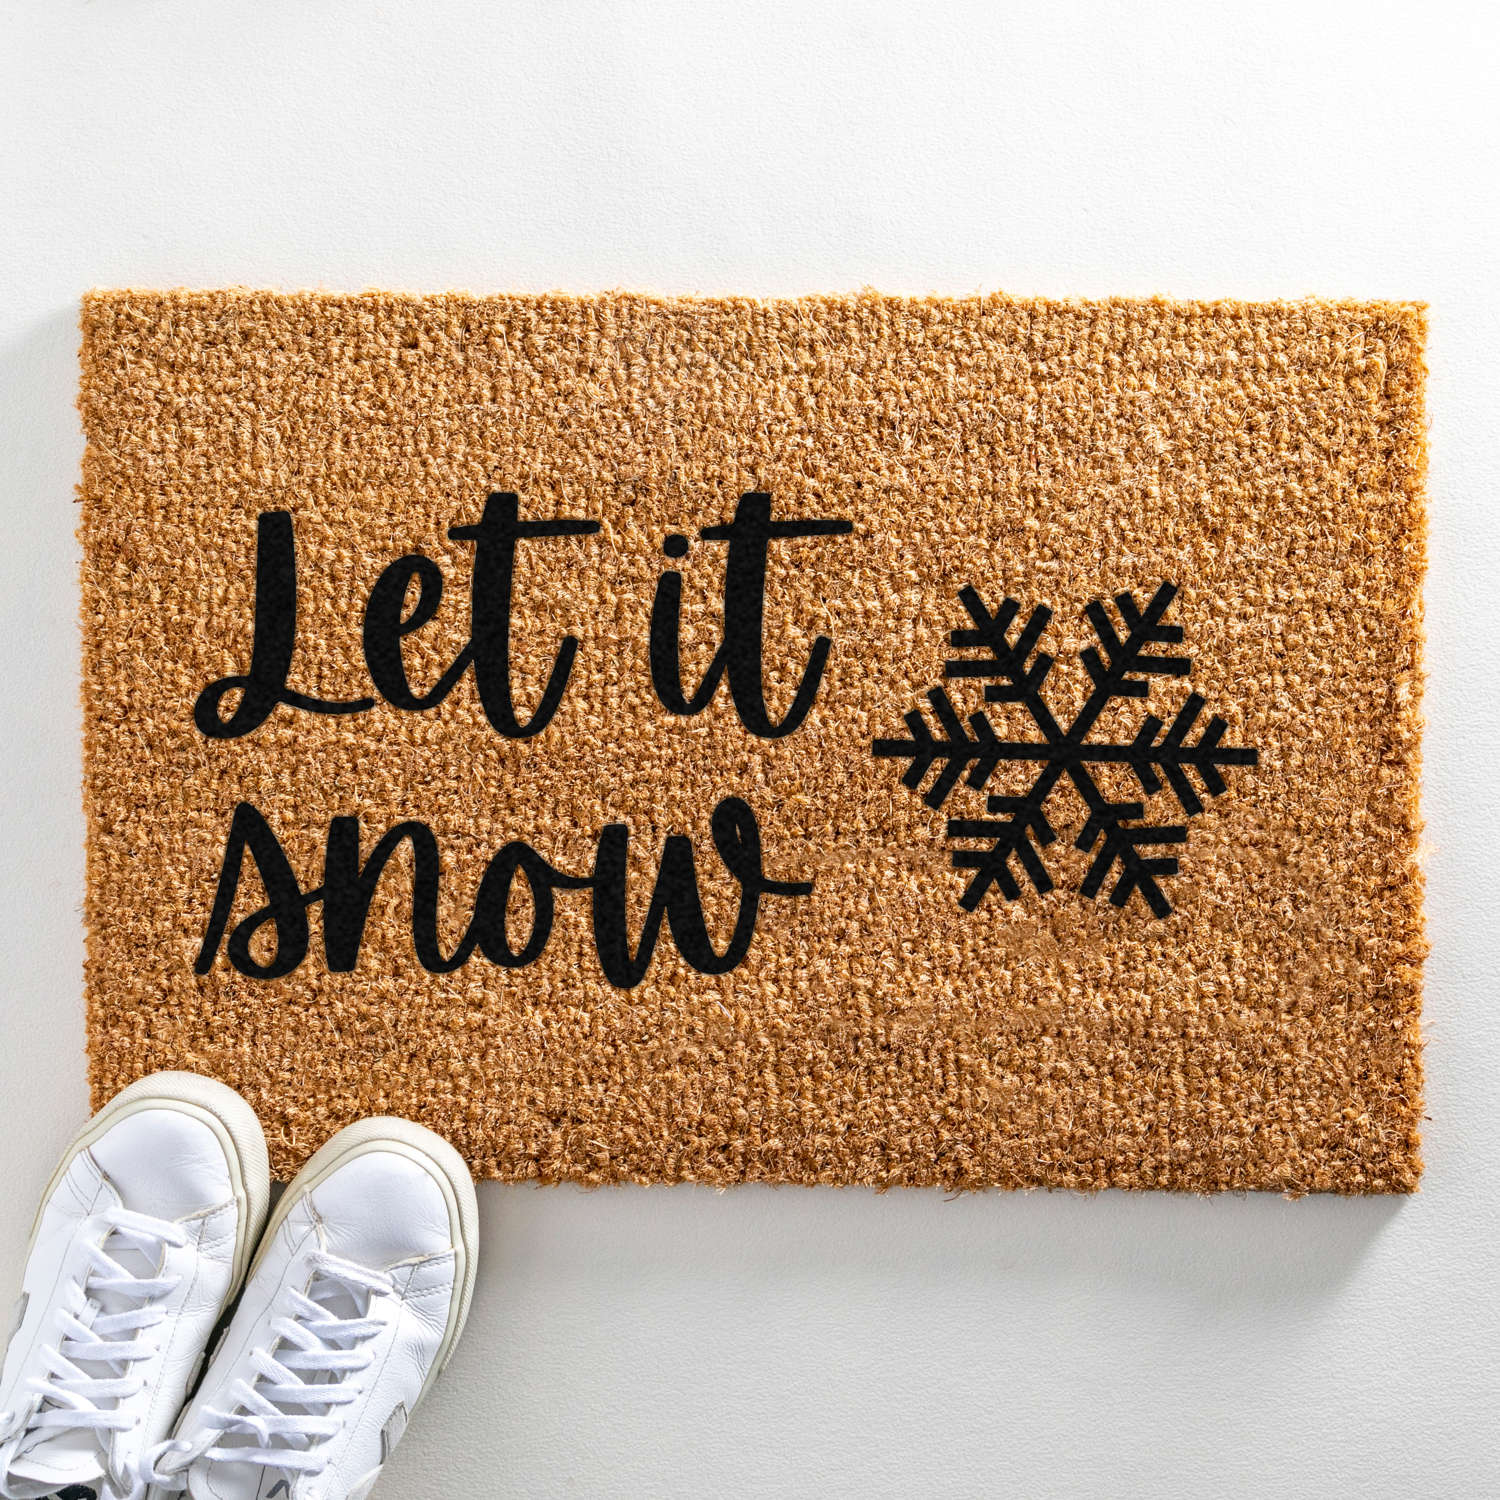 Let it snow Christmas design doormat